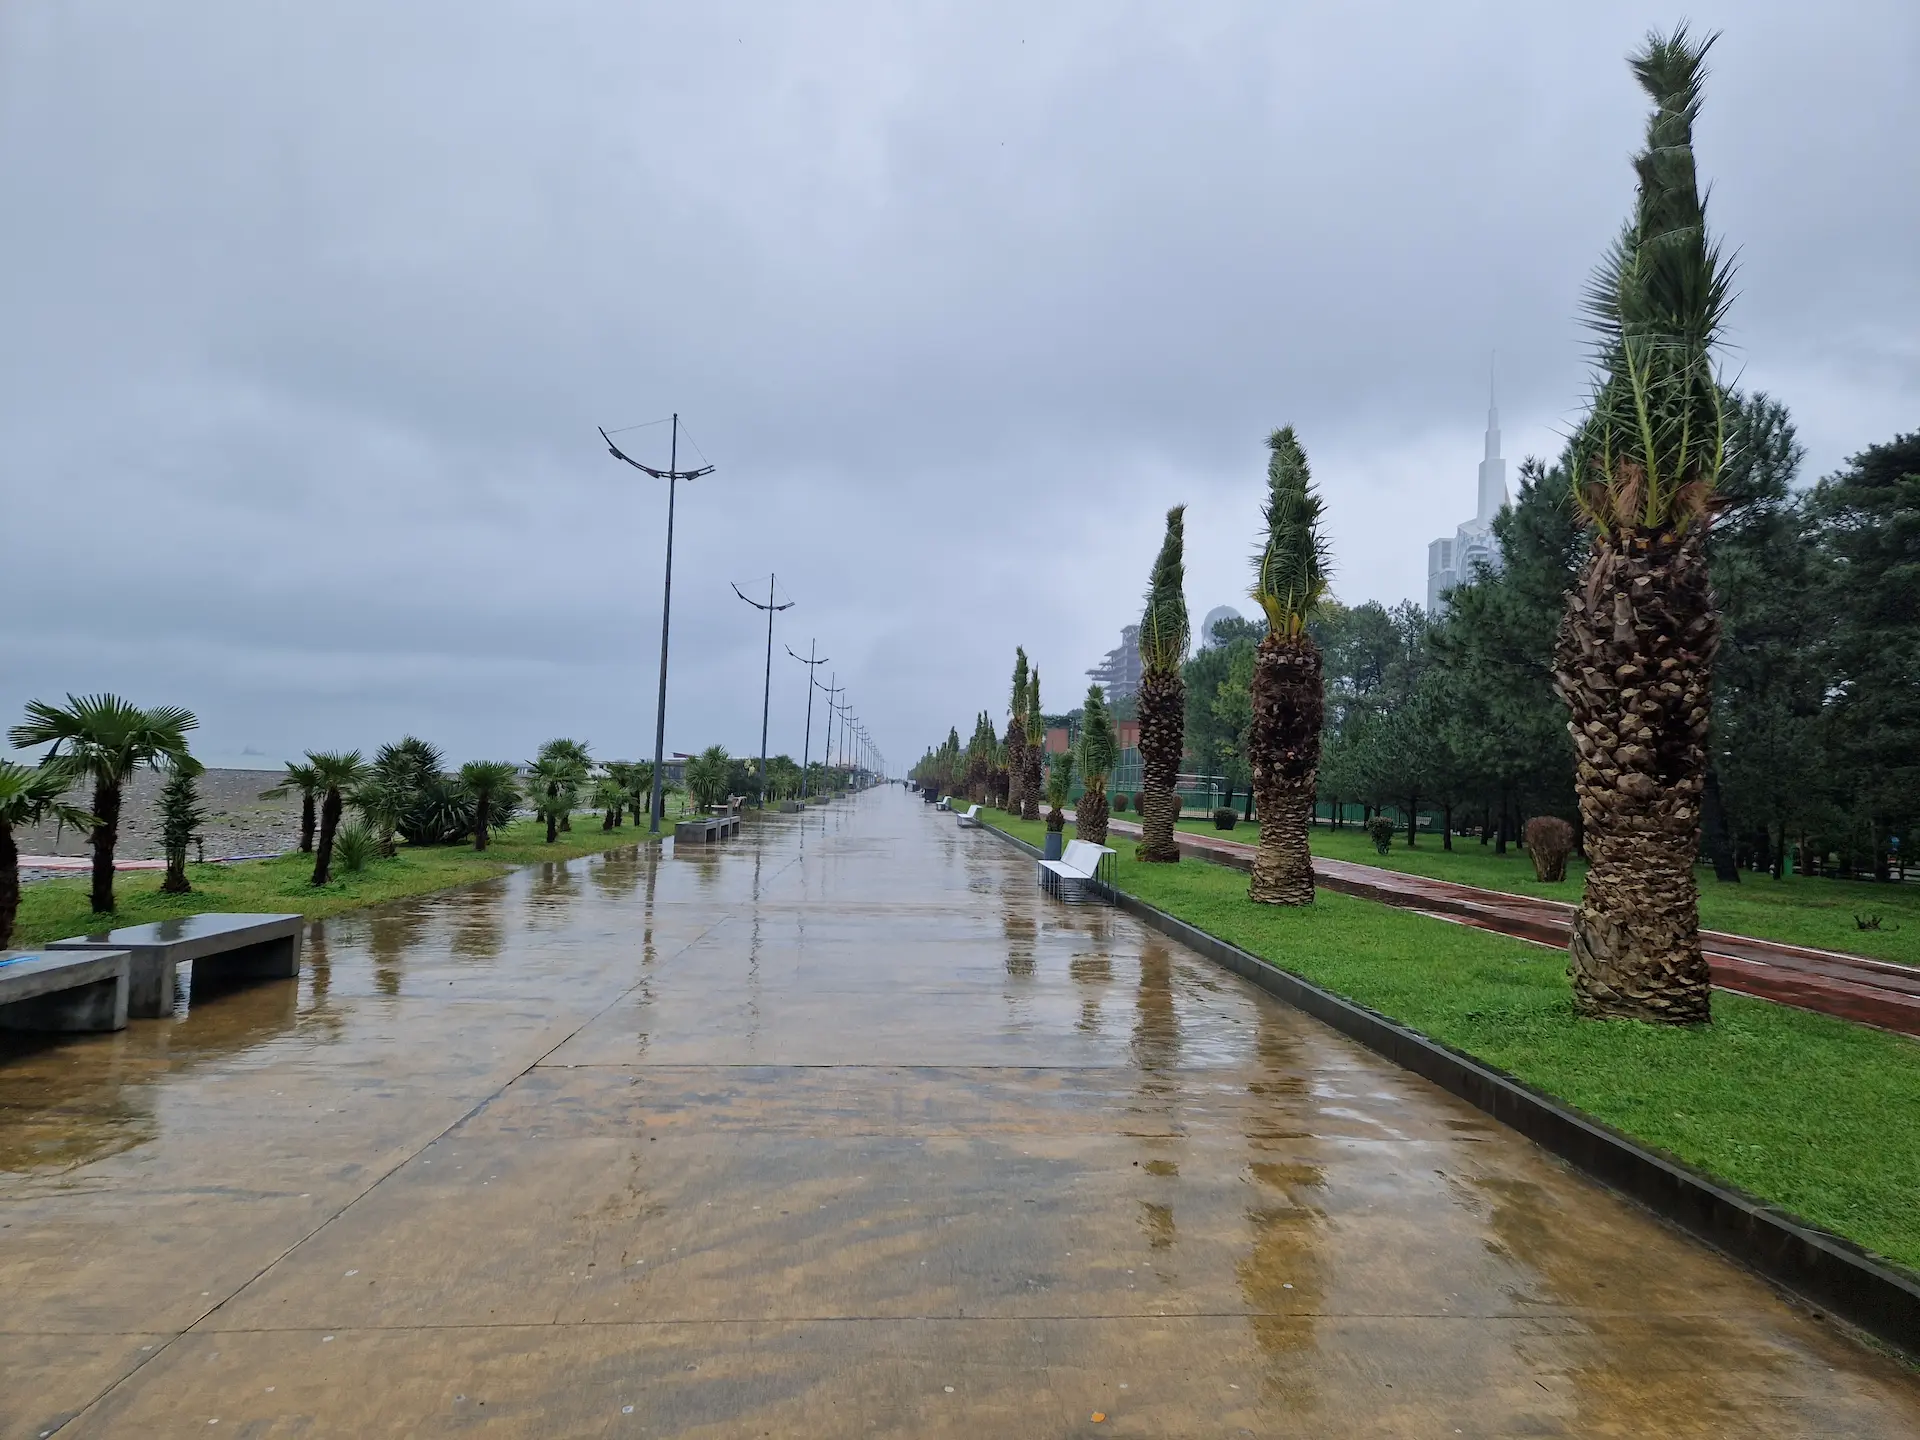 Le "boulevard" de Batoumi, quais bordés de palmiers. Pour l'hiver les palmes des palmiers sont attachées en une sorte de couette. Les quais sont déserts, trempés par la pluie battante.